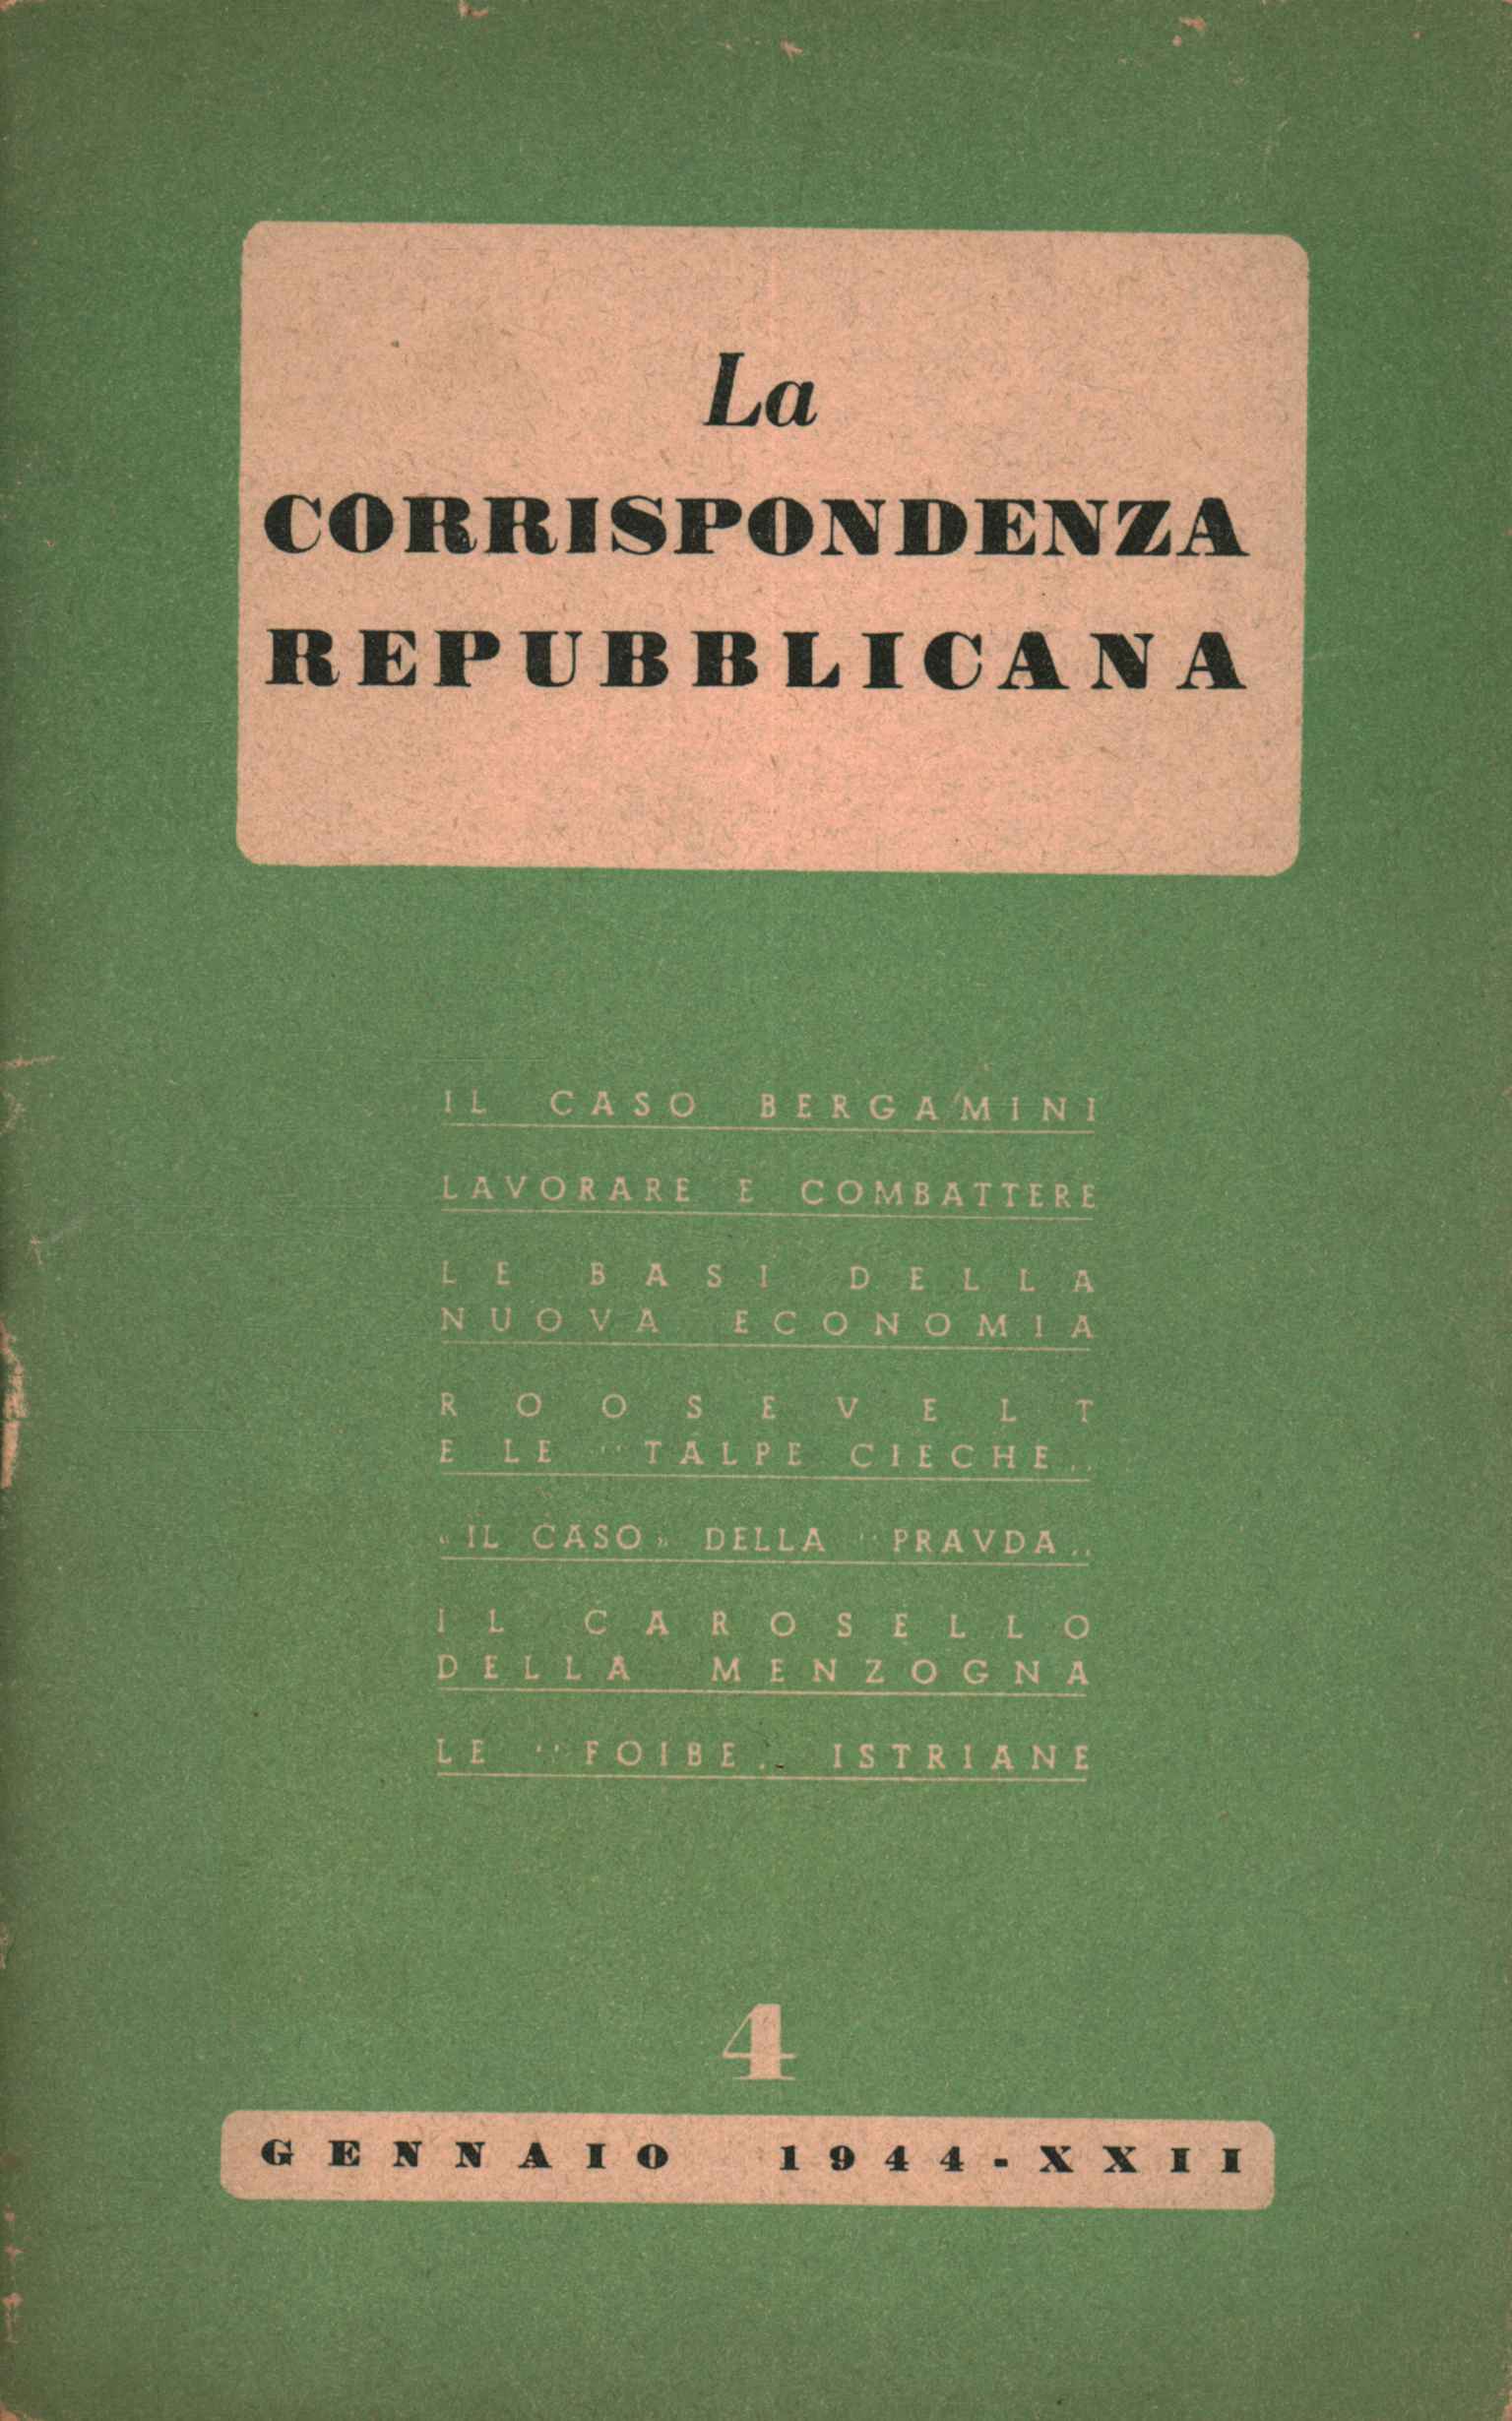 Republican correspondence (1944-XII) ,Republican correspondence (1944-XXII)%2,Republican correspondence (1944-XXII)%2,Republican correspondence (1944-XXII)%2